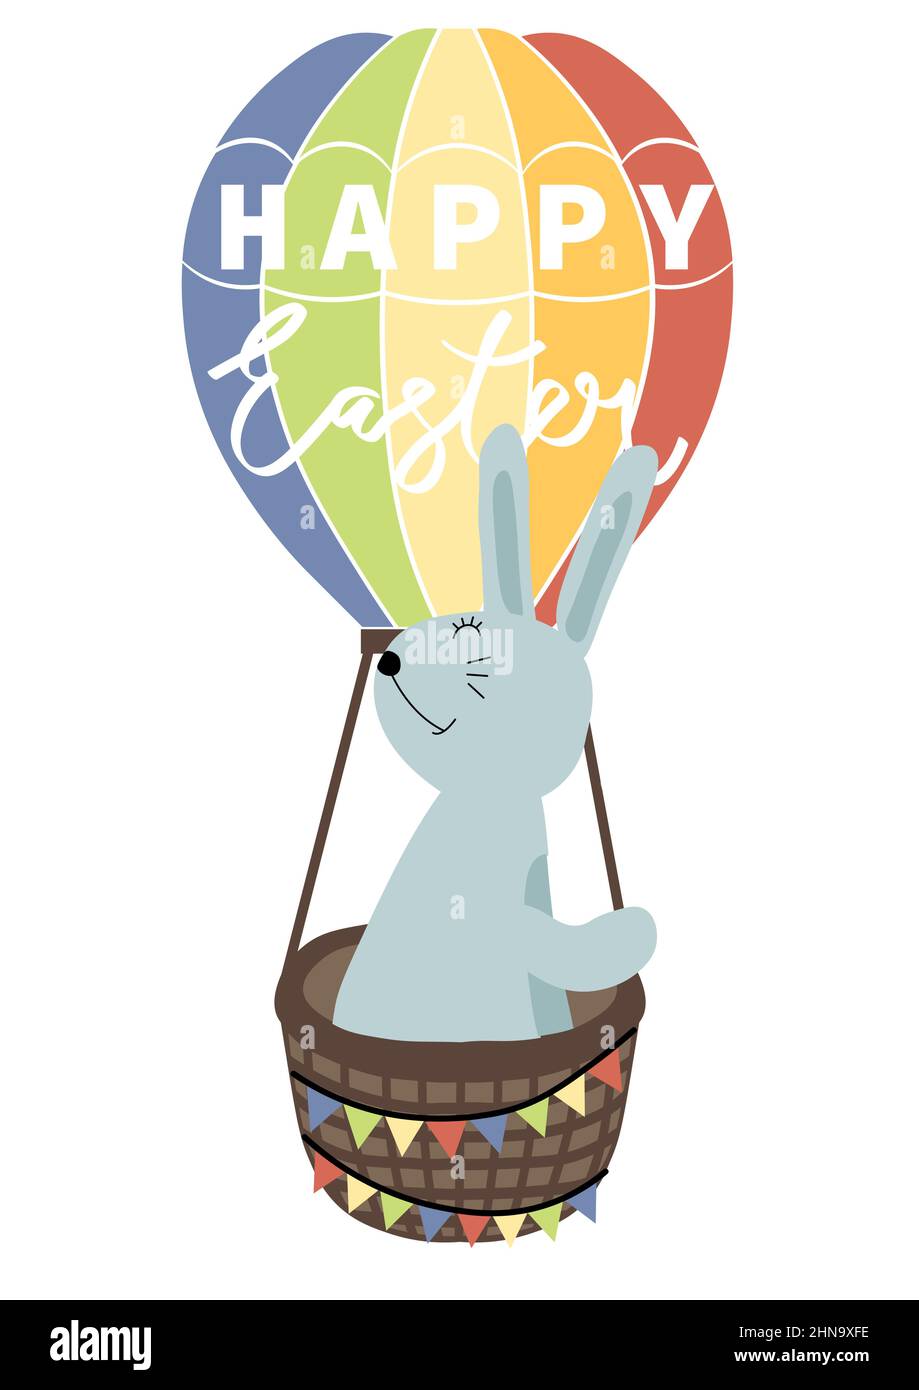 Vektor-Illustration von Hase auf einem Ballon. Frohe Ostern Grüße Text. Design für Web, Website, Banner, Poster, Karte, Papierdruck, Postkarte, Flyer Stock Vektor